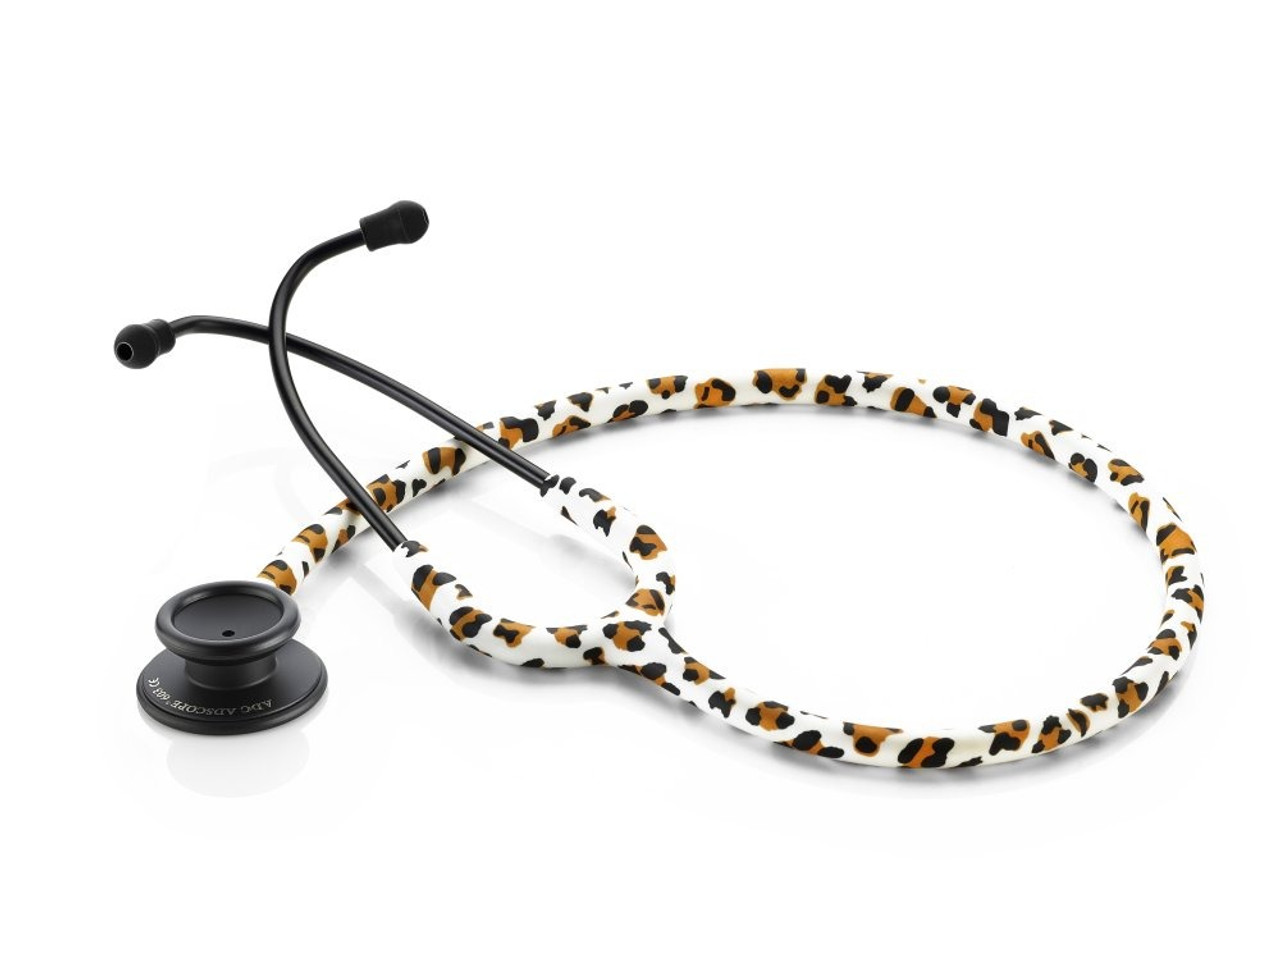 Adscope 603 Clinician Stethoscope in Leopard